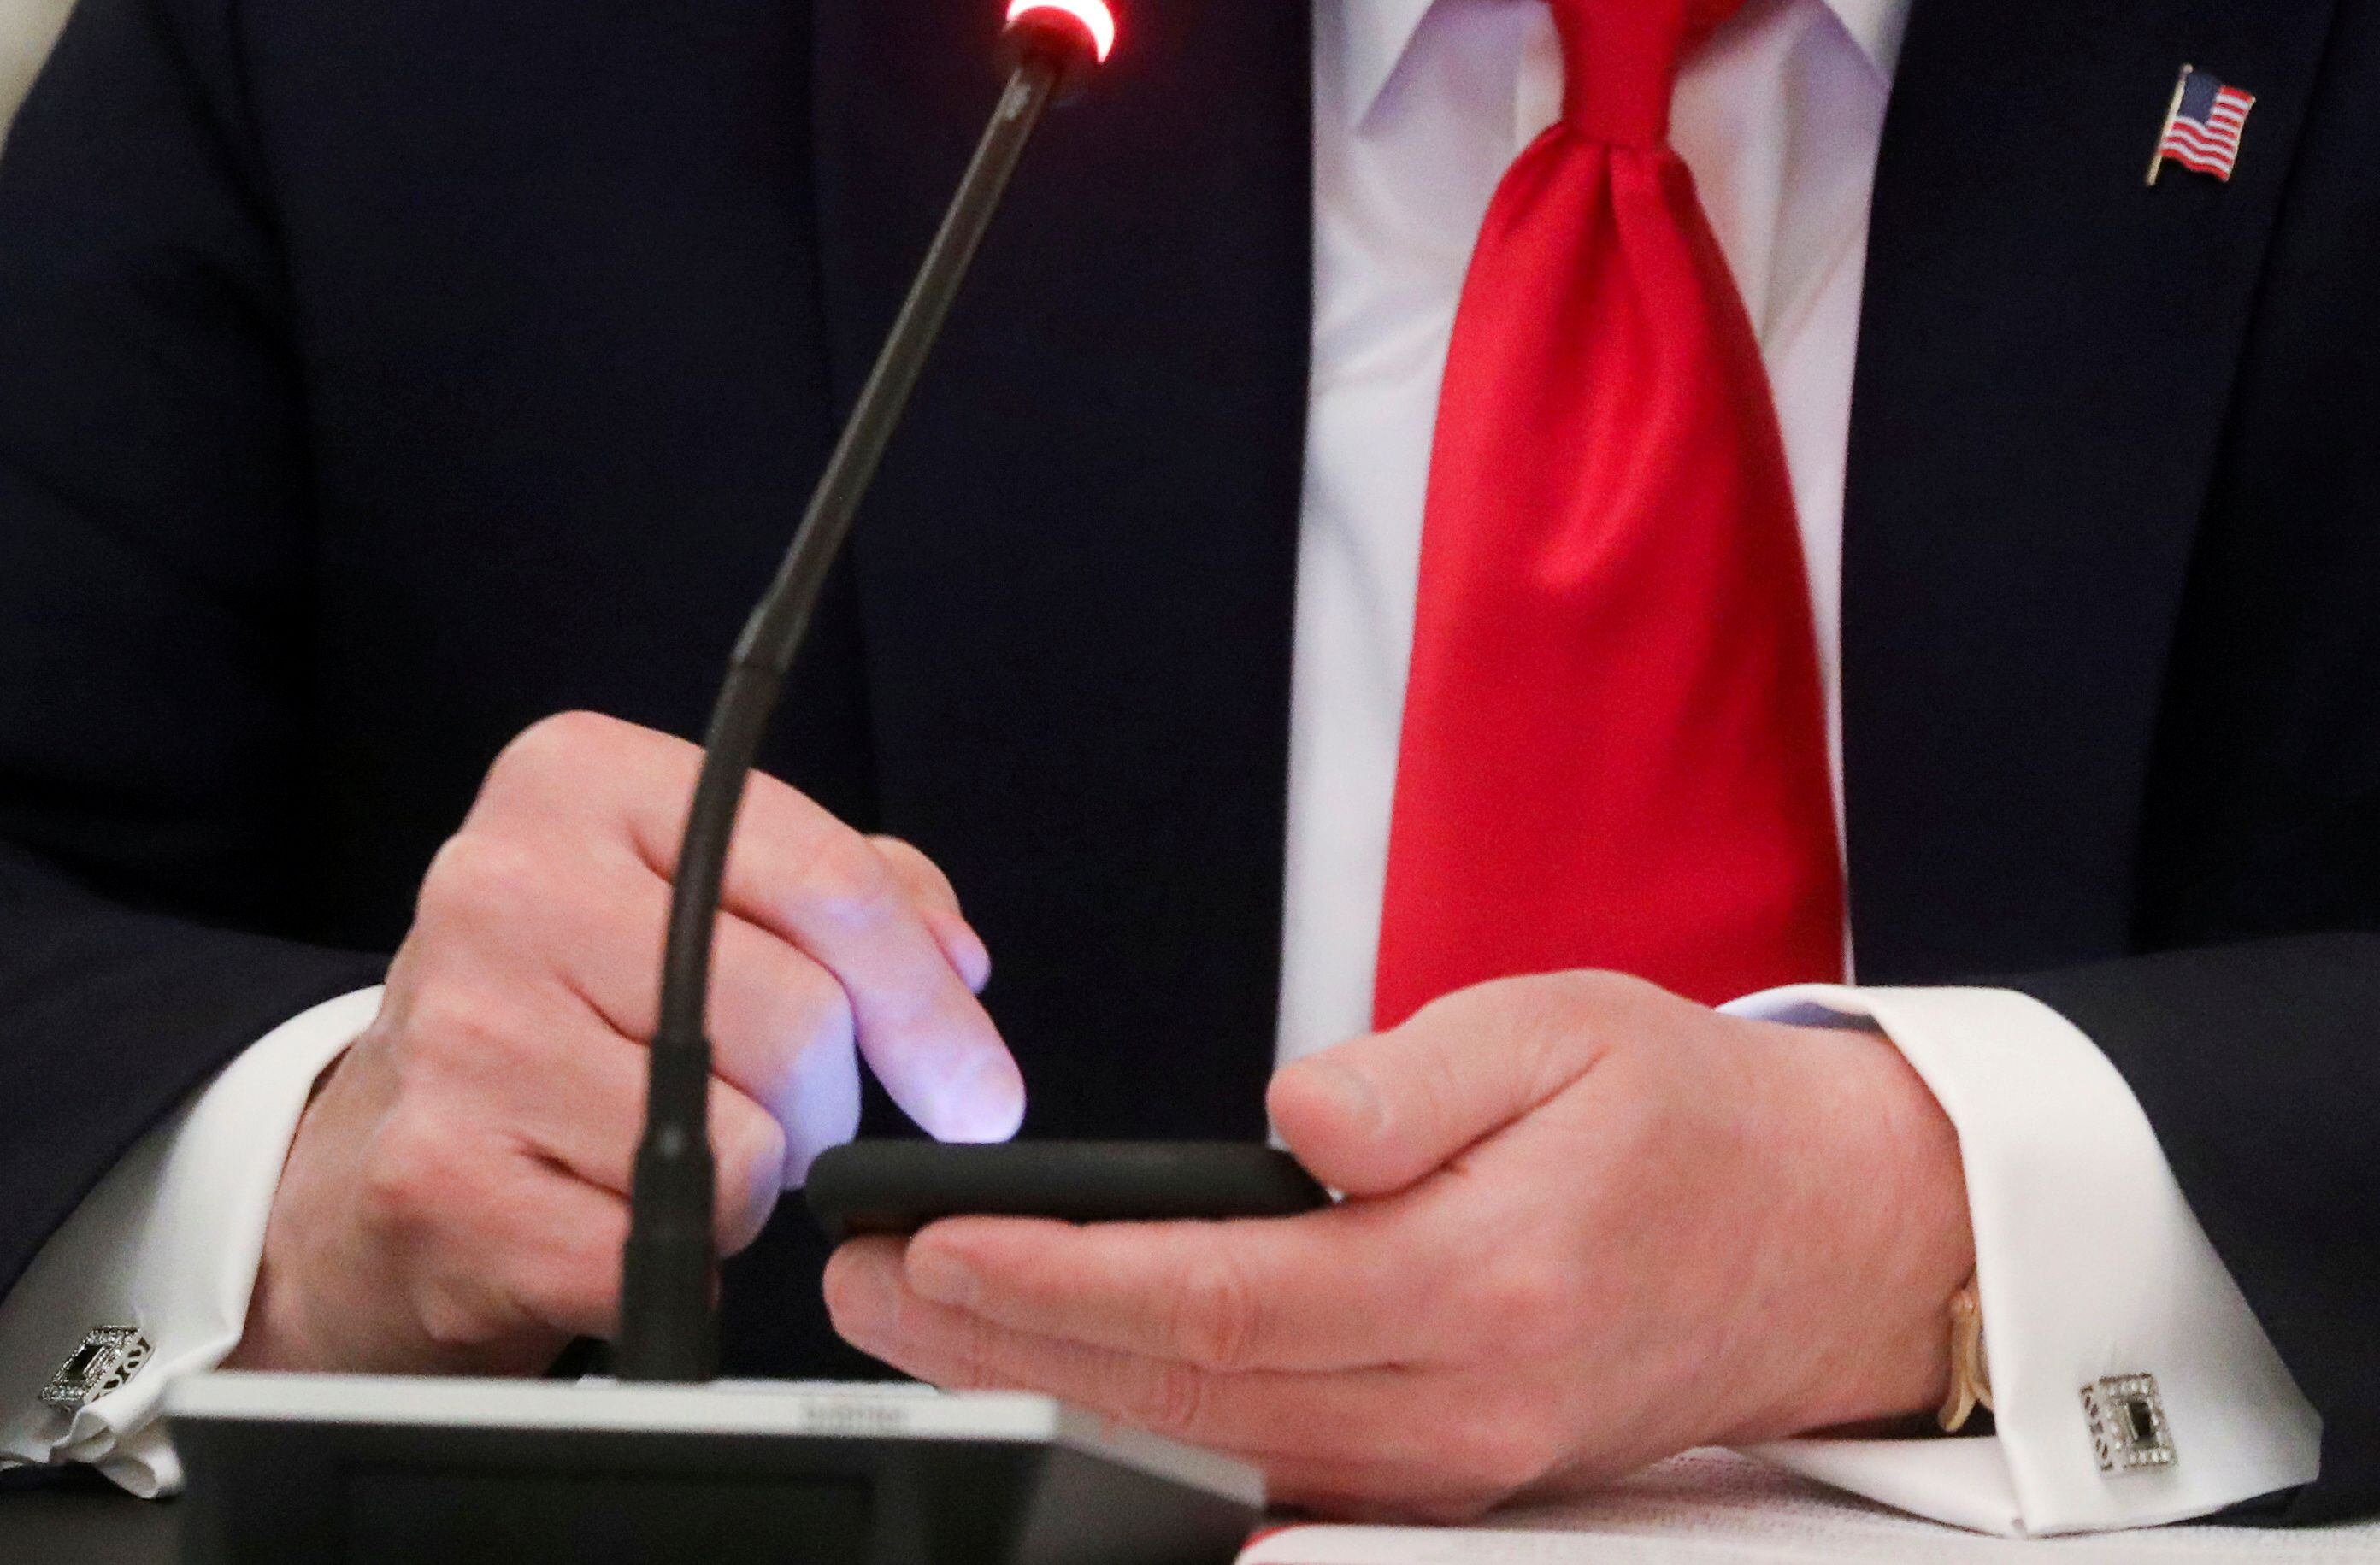 El expresidente de EEUU, Donald Trump, en un evento en la Casa Blanca, Washington, EEUU, 18 junio 2020.
REUTERS/Leah Millis